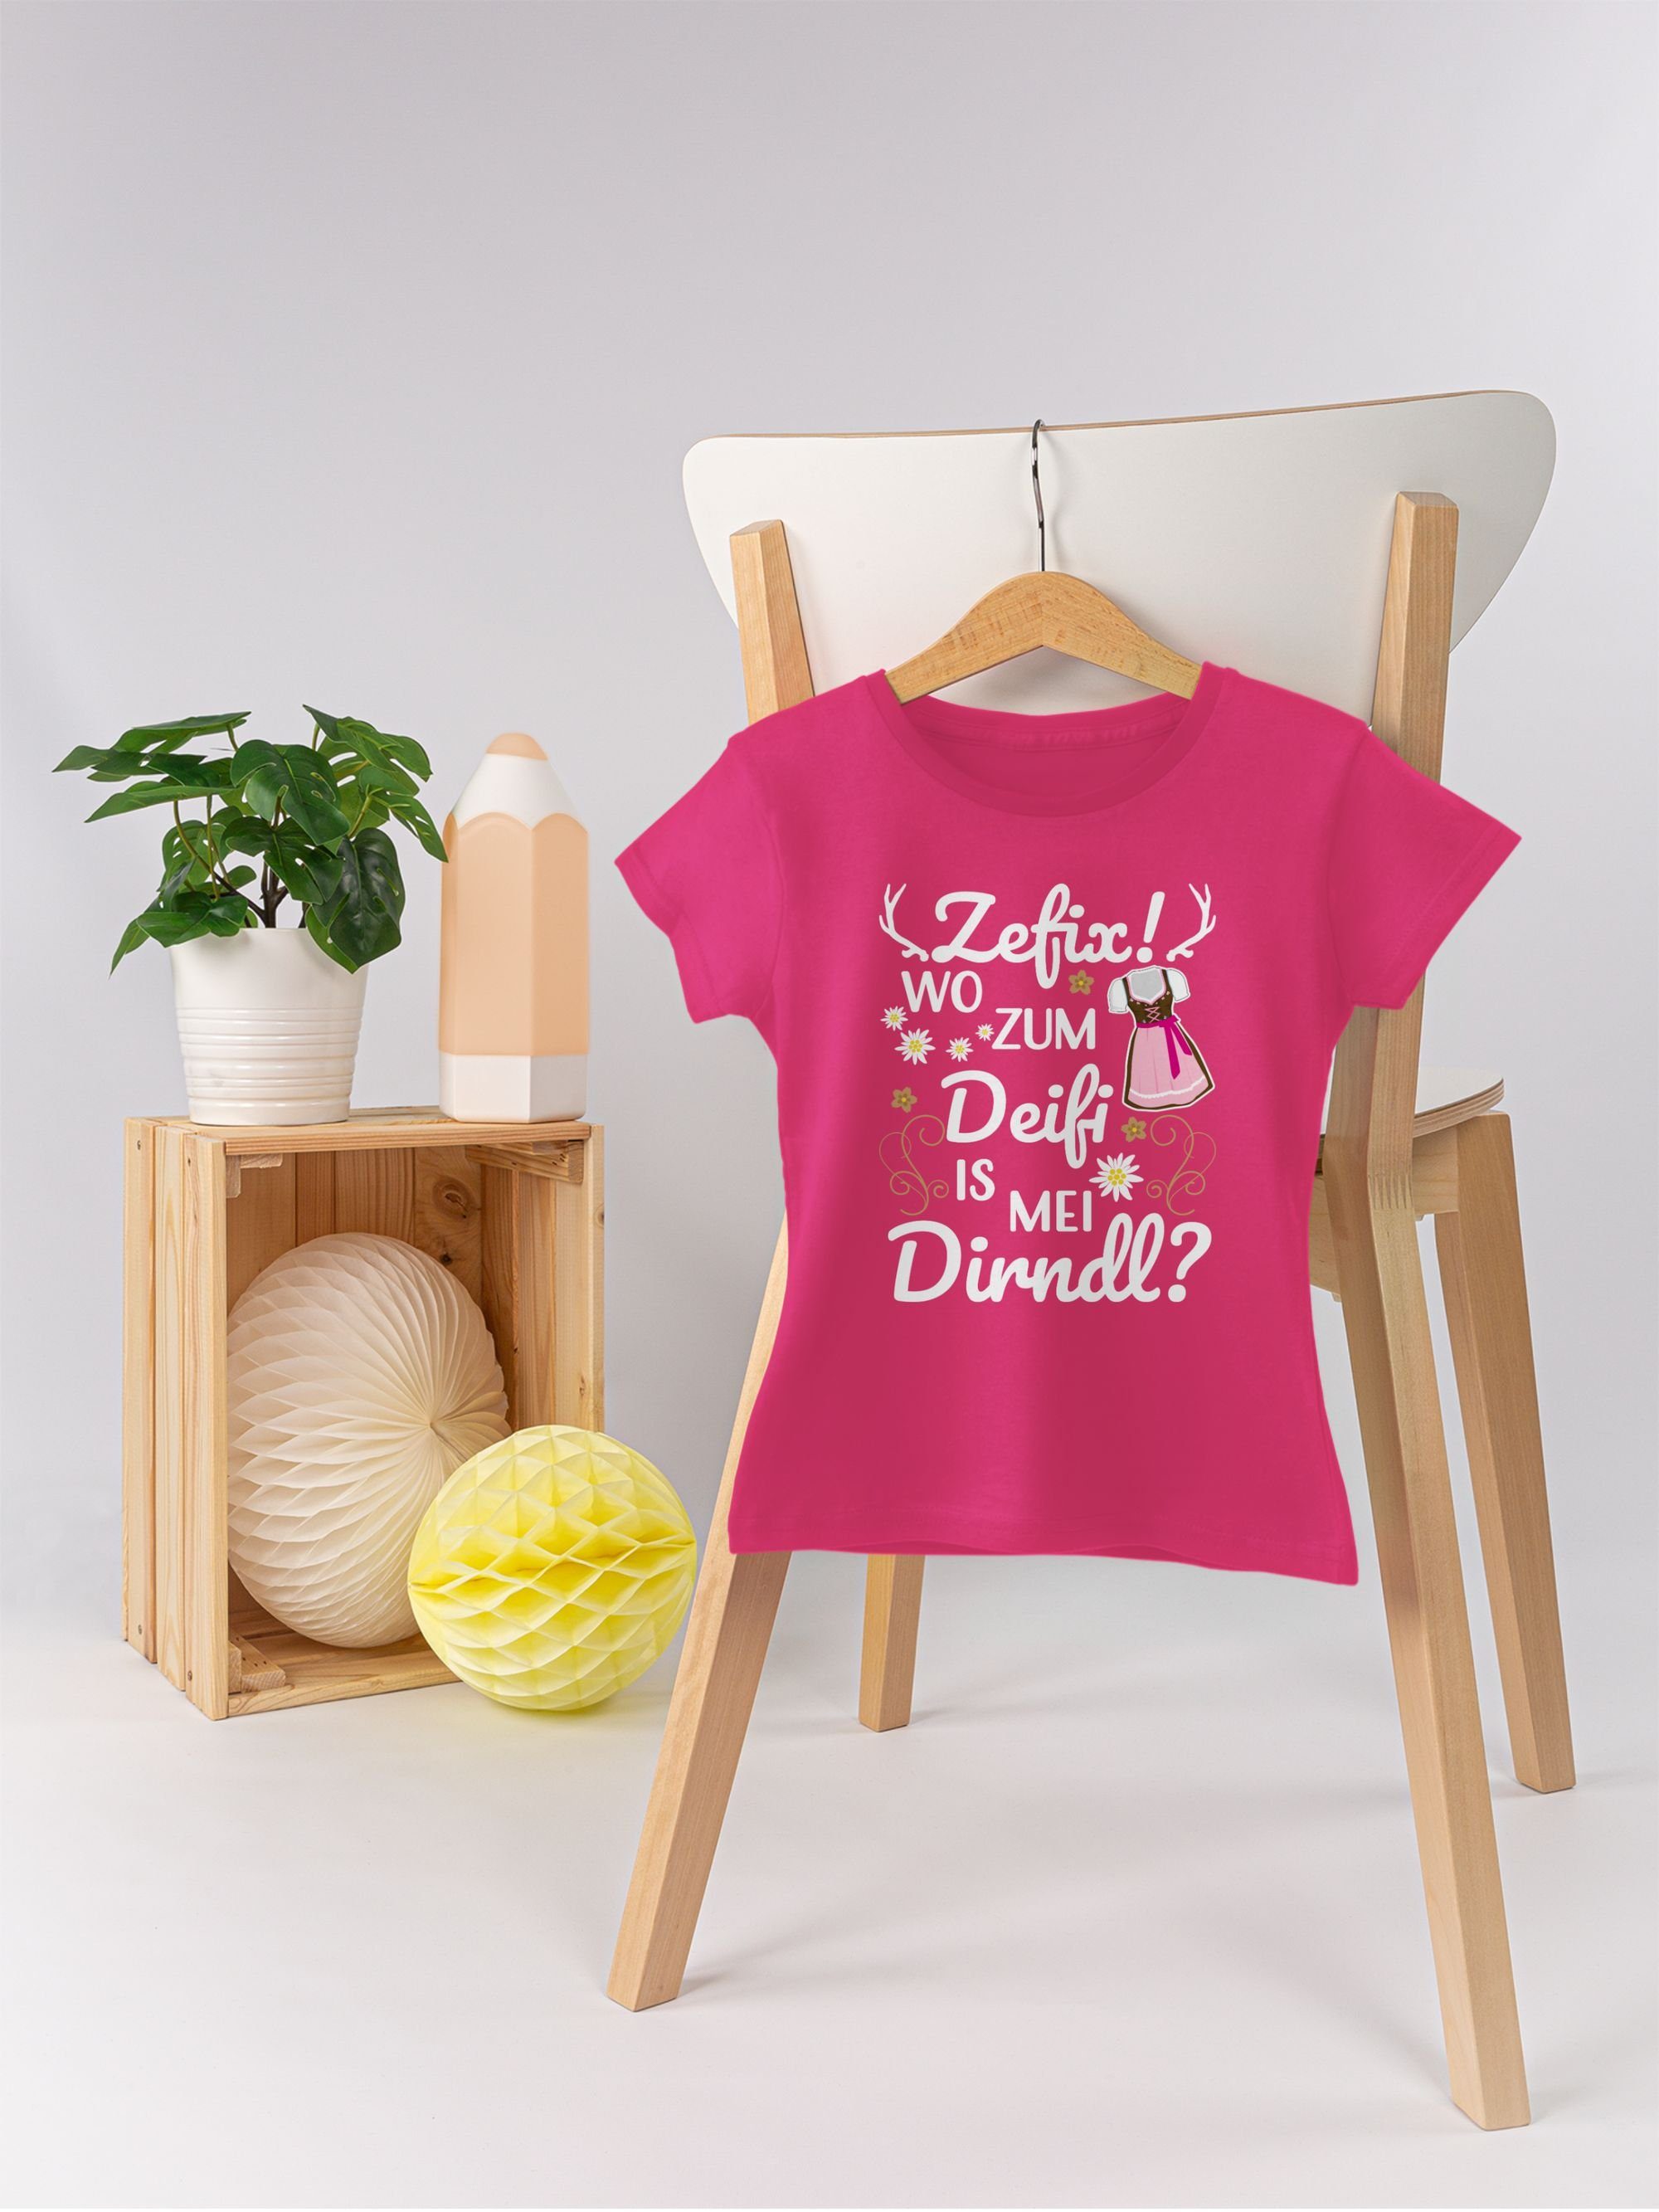 1 zum Fuchsia Mode T-Shirt Shirtracer Outfit Wo für mei is Dirndl Oktoberfest Deifi Kinder